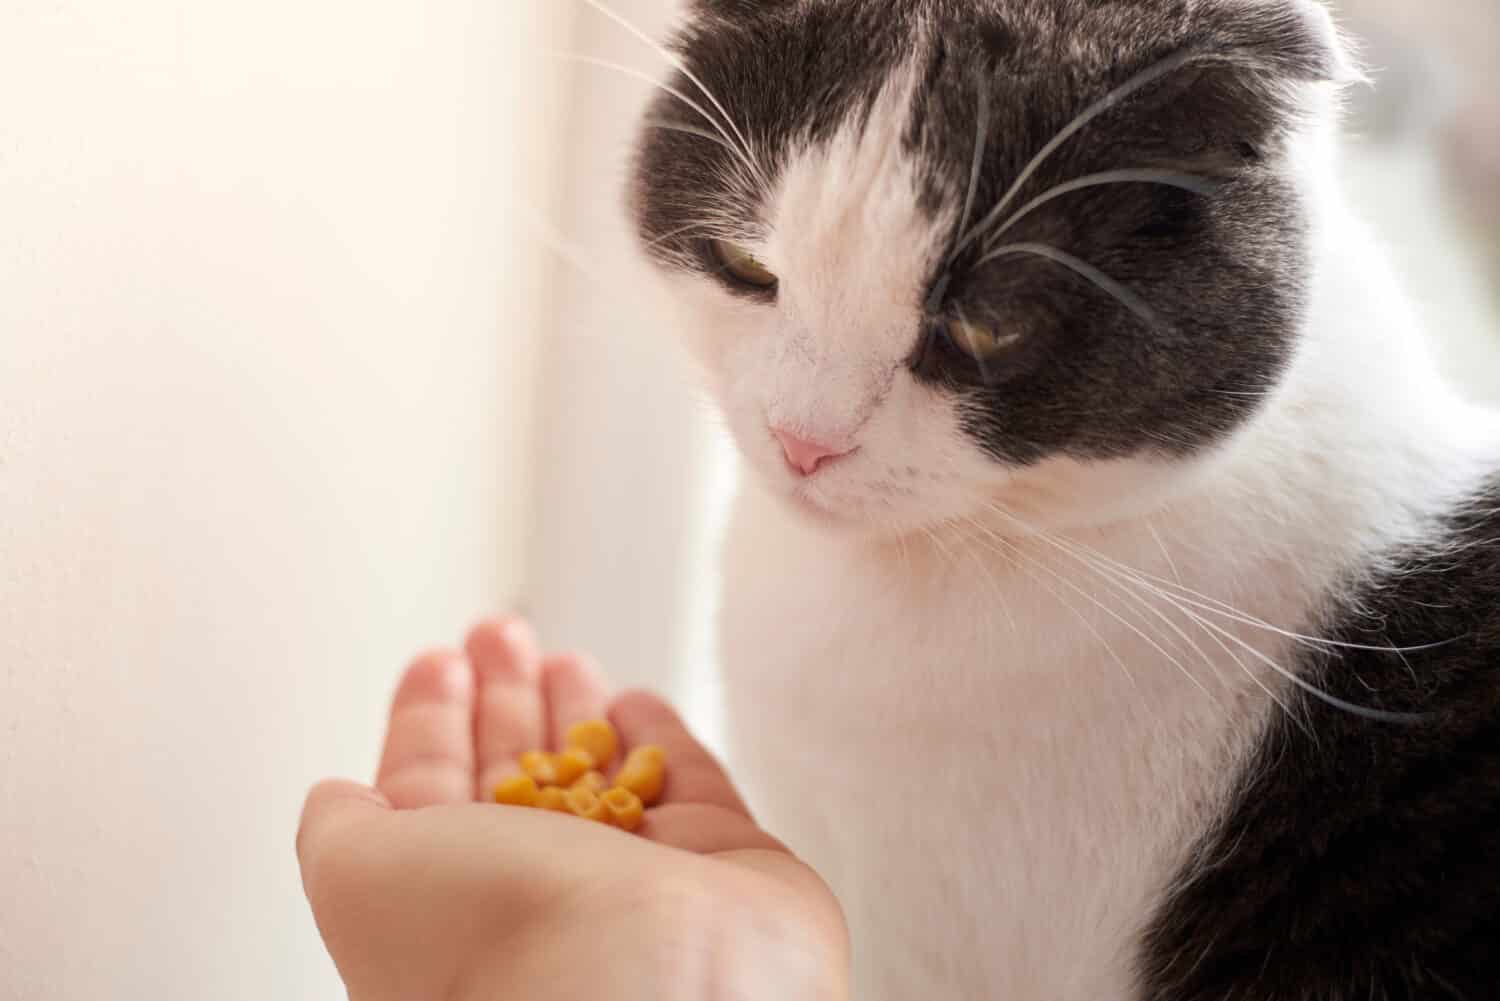 Il proprietario dà il suo simpatico mais al gatto nel palmo della mano.